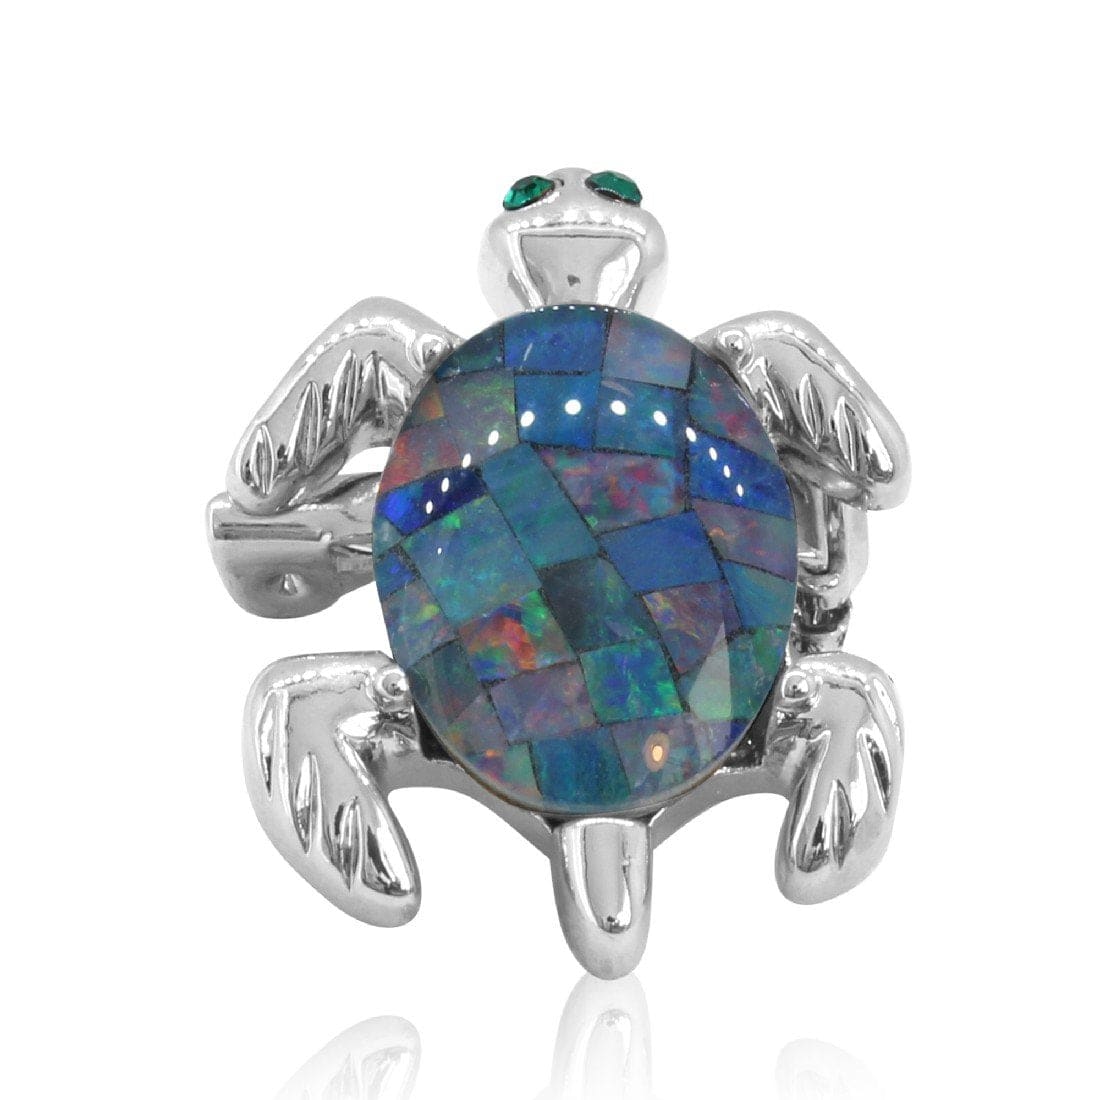 Base metal Silver plated Turtle Opal Mosiac triplet brooch - Masterpiece Jewellery Opal & Gems Sydney Australia | Online Shop